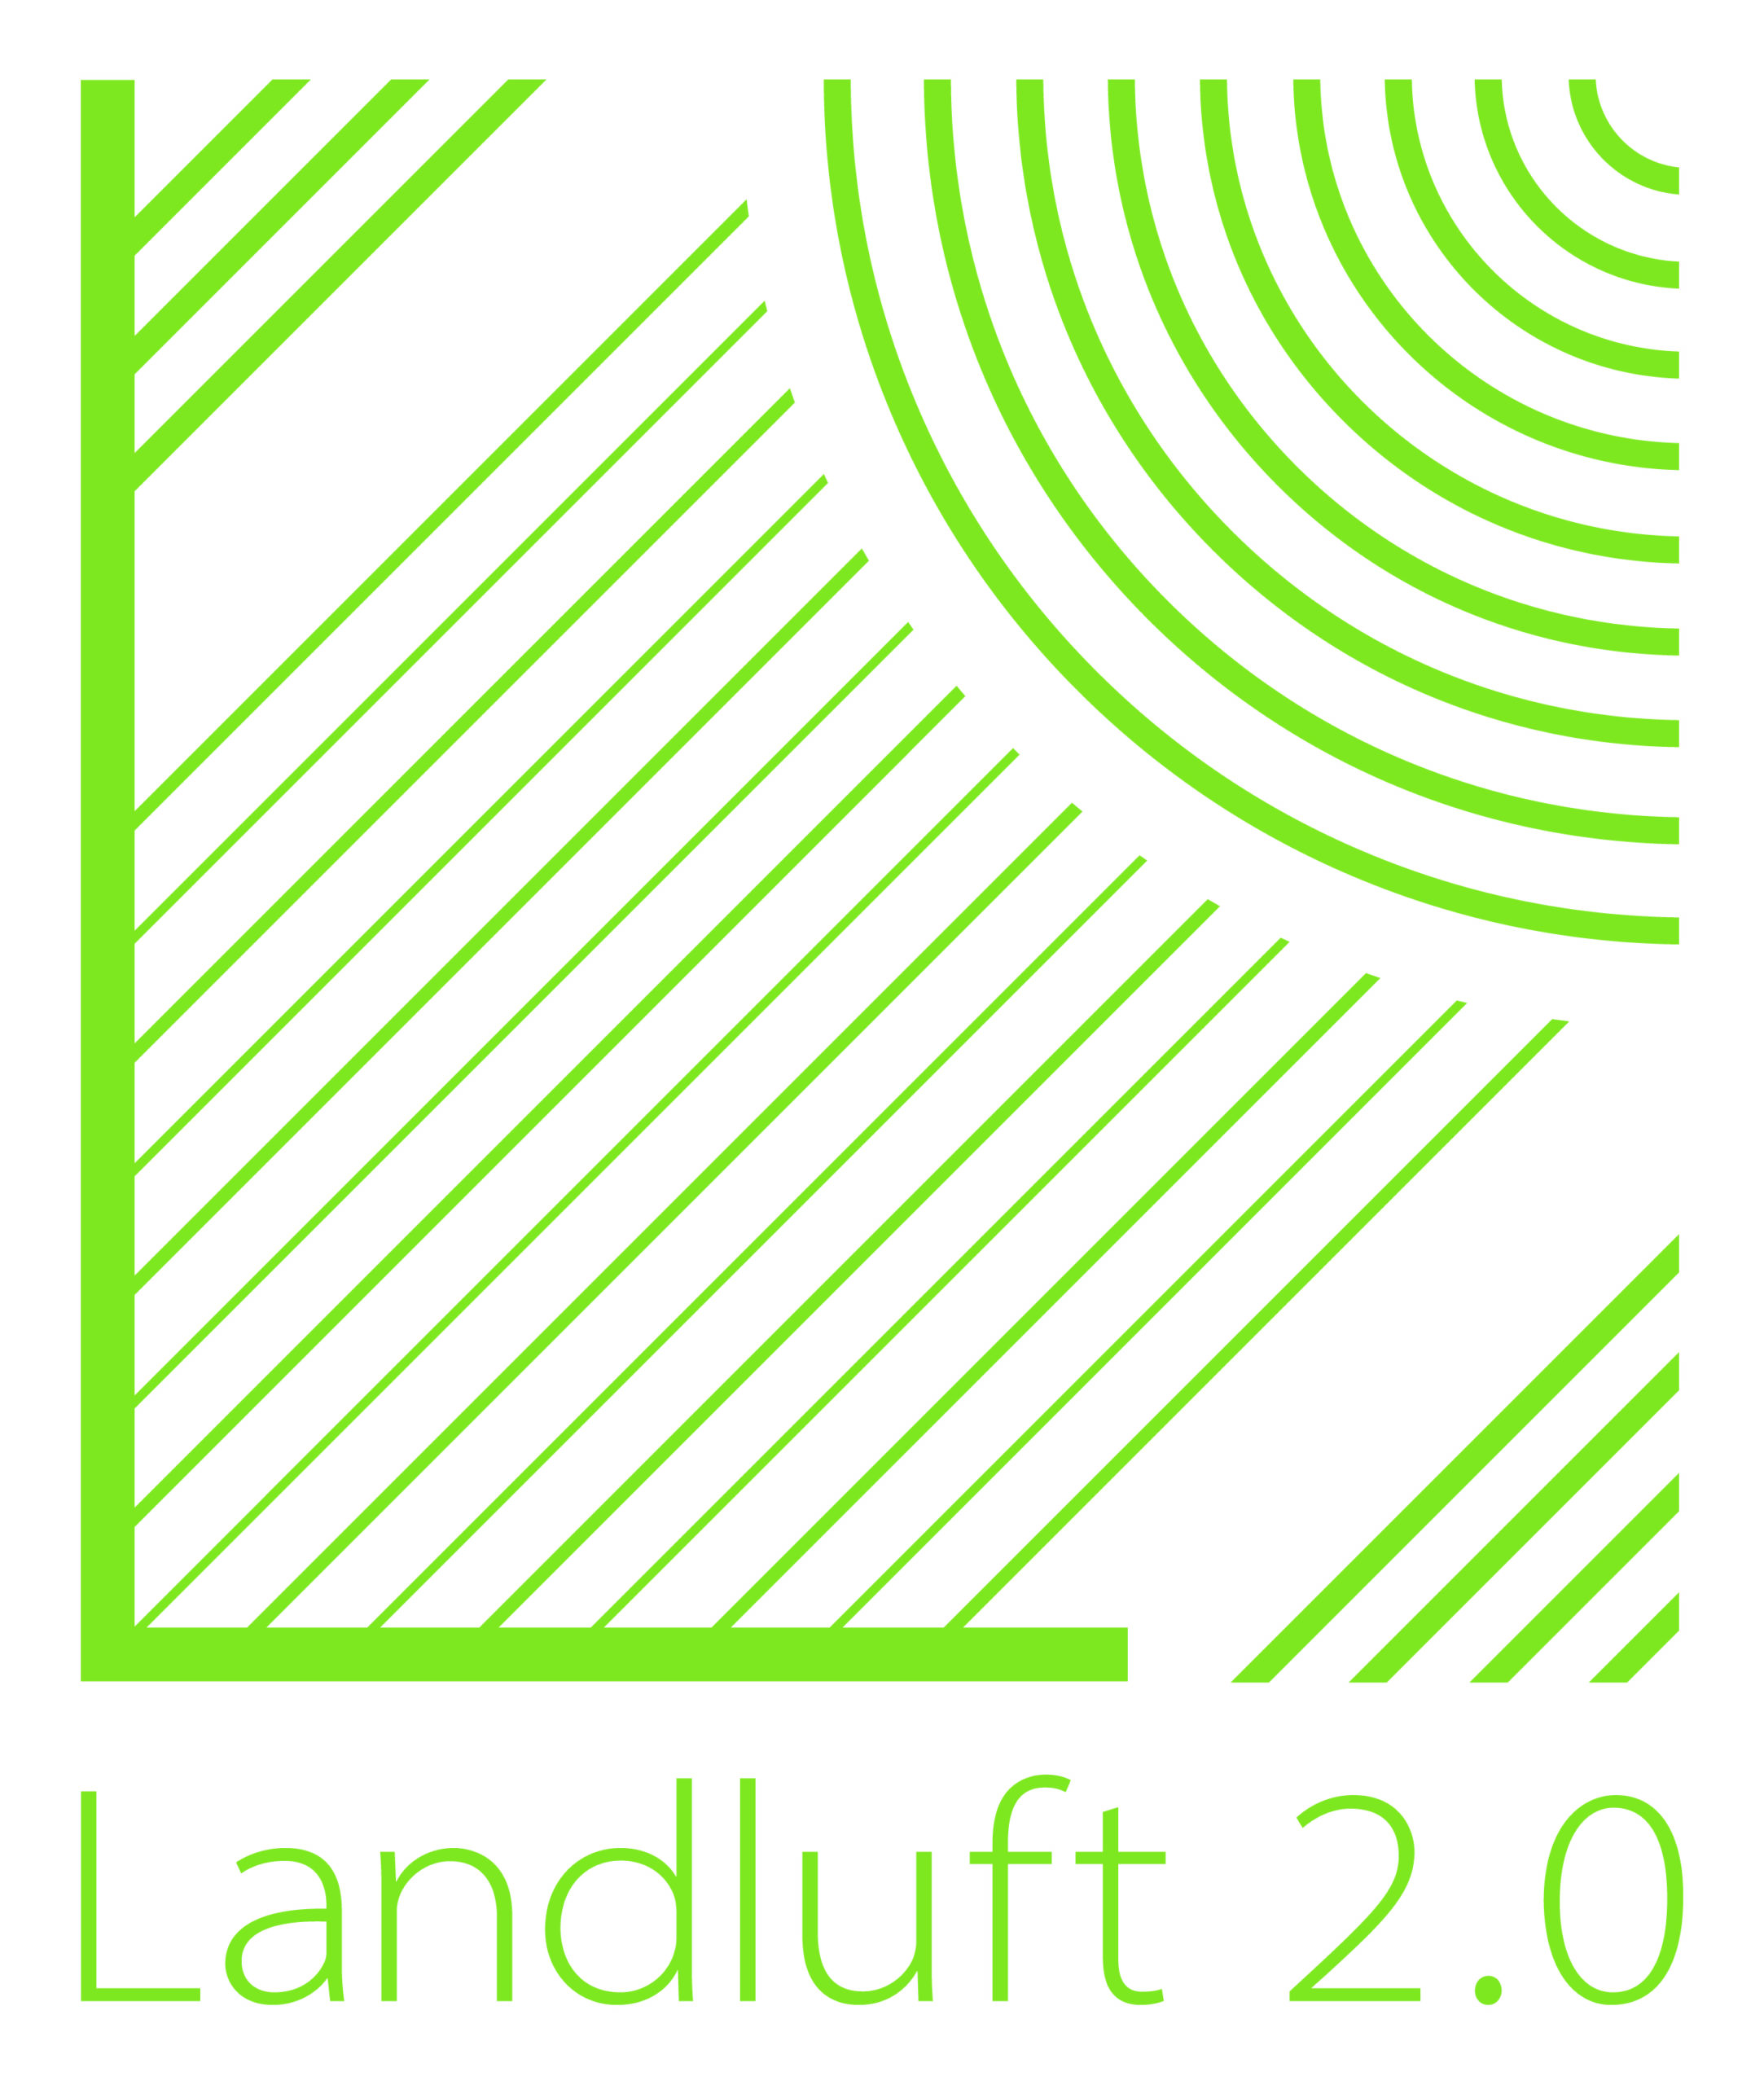 Landluft 2.0 sucht AMATEURTHEATERBÜHNEN aus dem LÄNDLICHEN RAUM (Dörfer/Kleinstädte mit bis zu 35.000 Einwohner*innen)